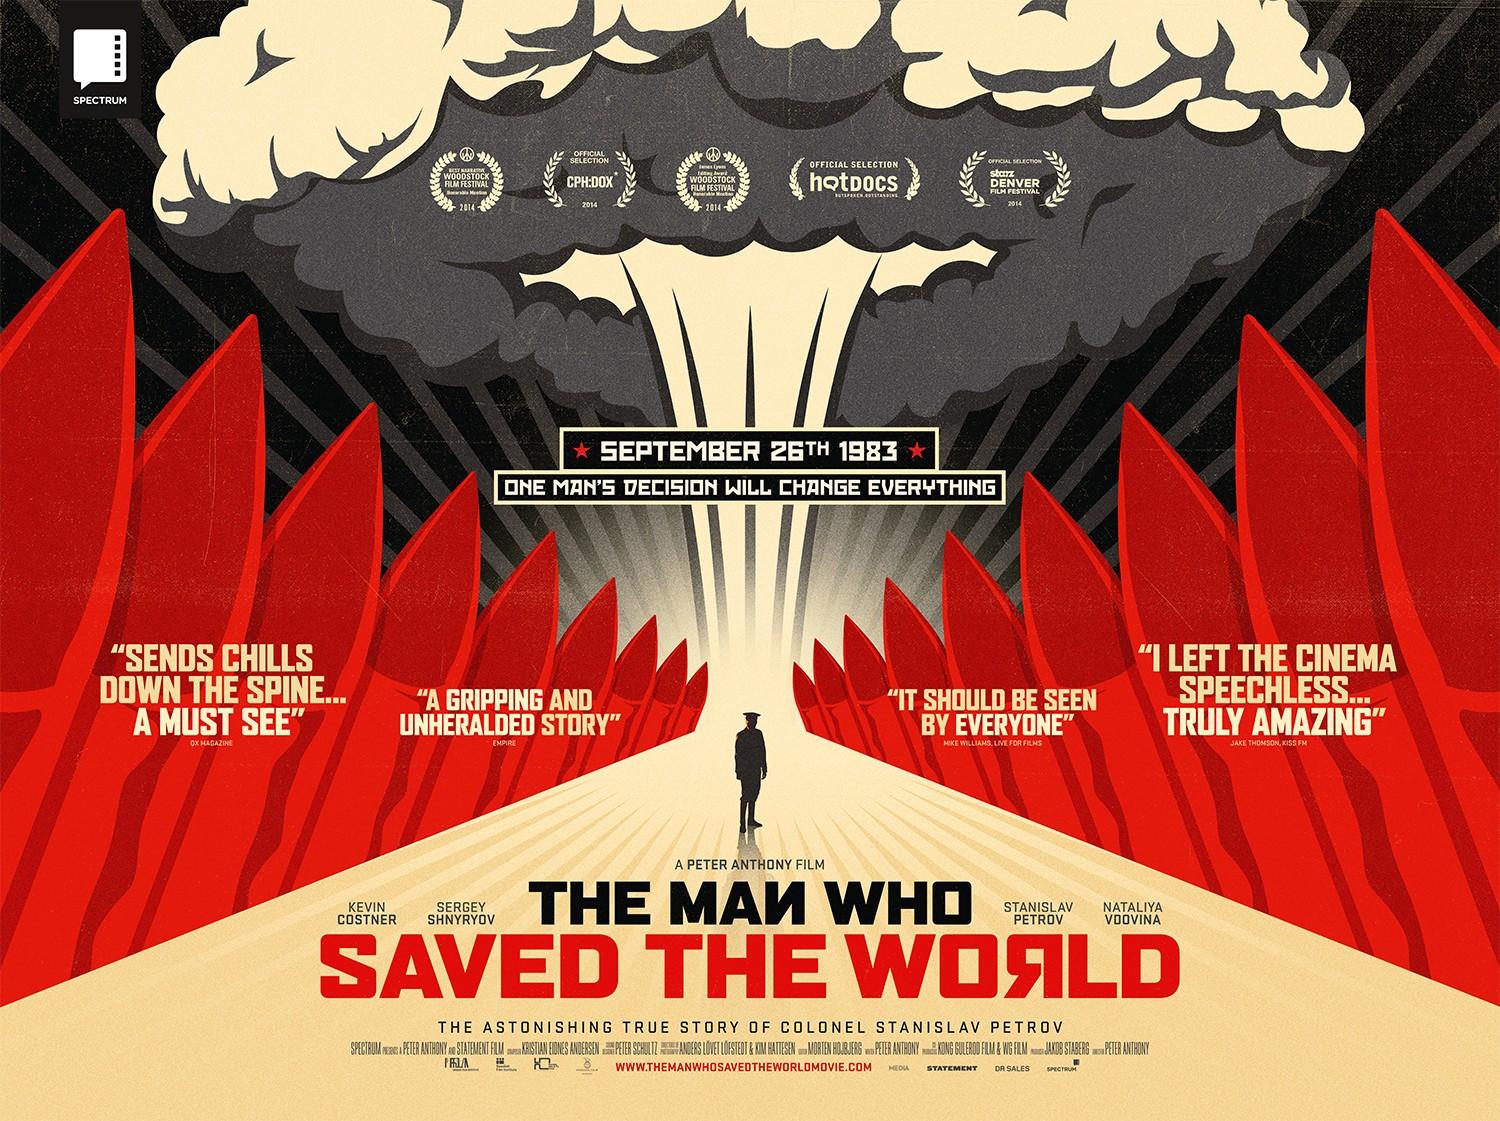 Постер - Человек, который спас мир: 1500x1121 / 274.23 Кб